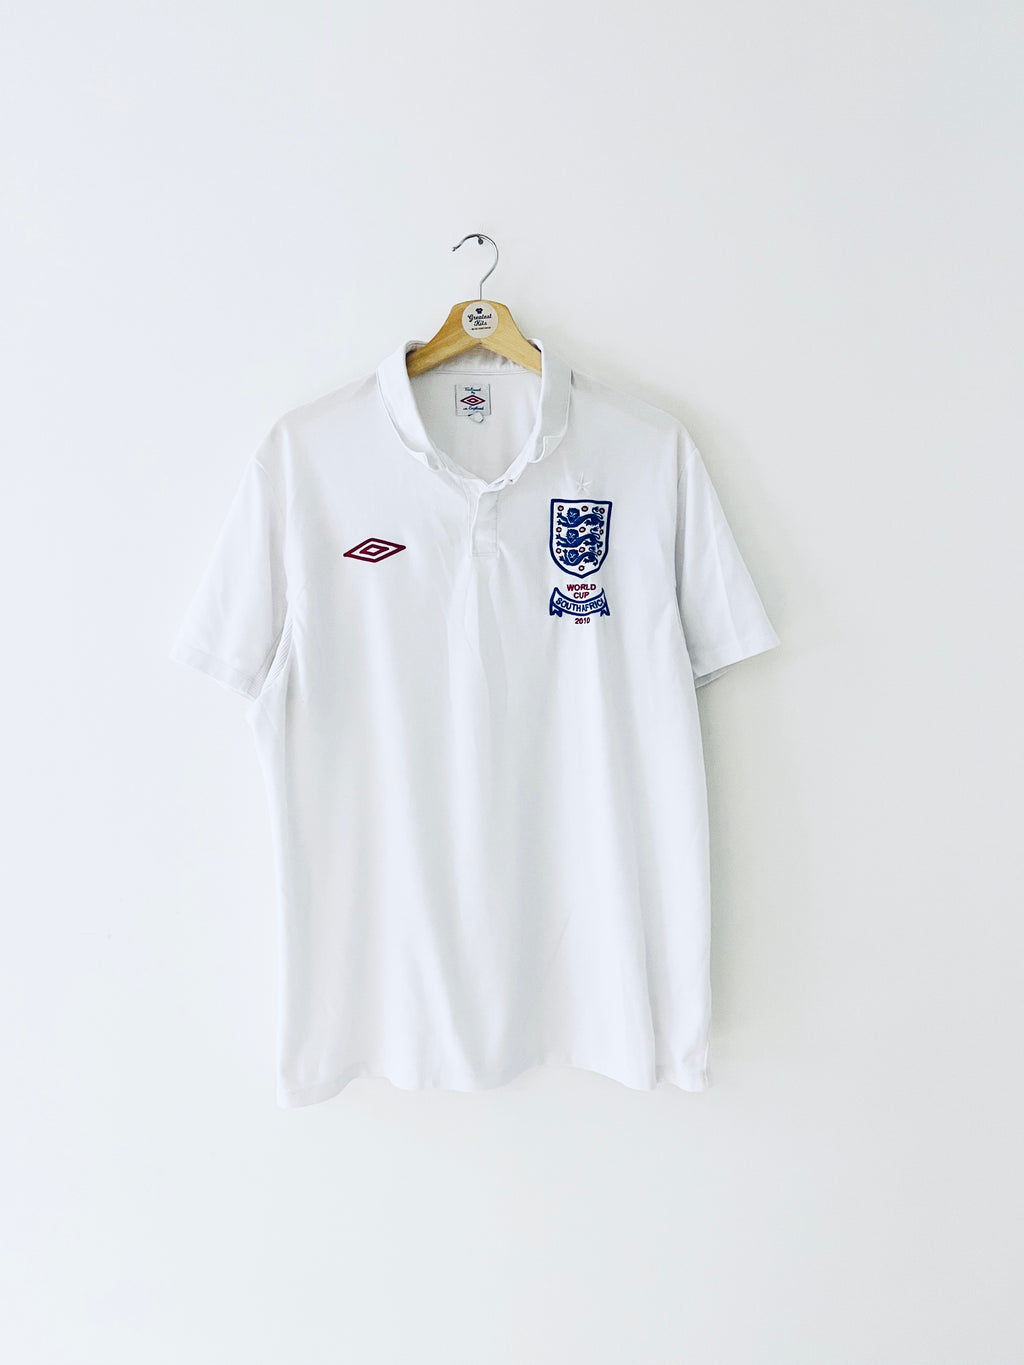 2010/11 England Home Shirt (XL) 9/10